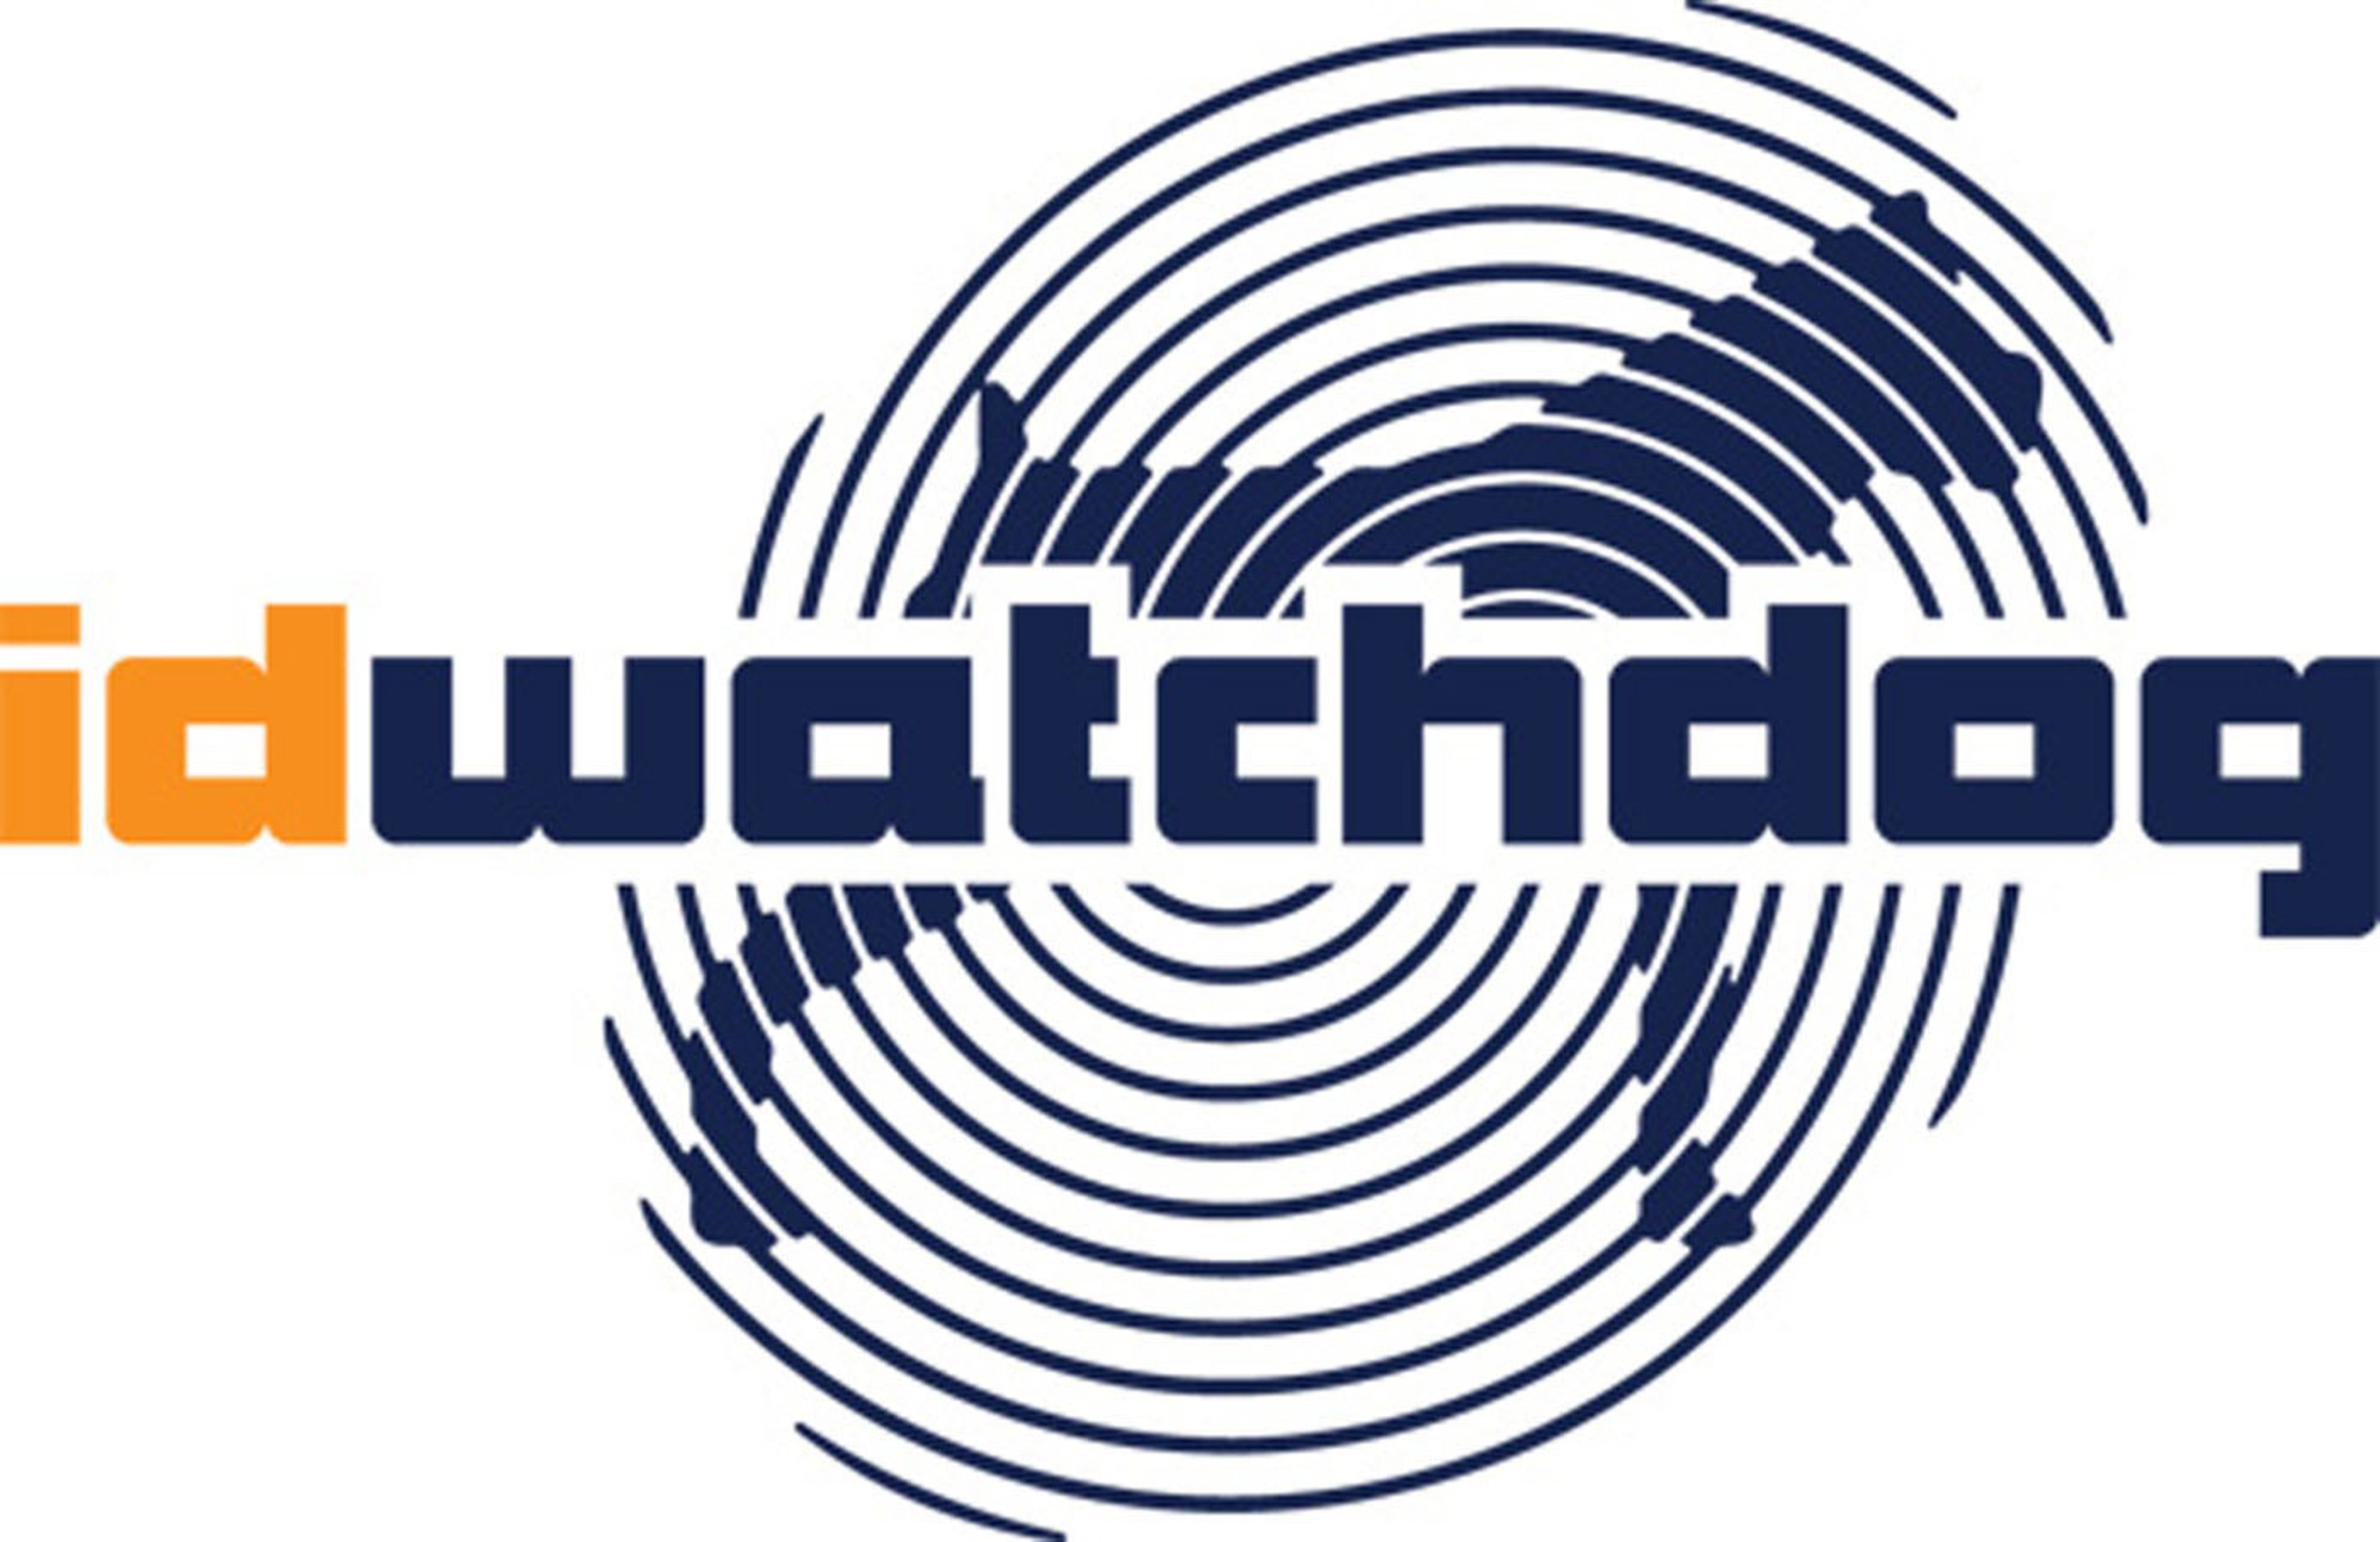 ID Watchdog, Inc. logo. (PRNewsFoto/ID Watchdog, Inc.) (PRNewsFoto/ID WATCHDOG, INC.)